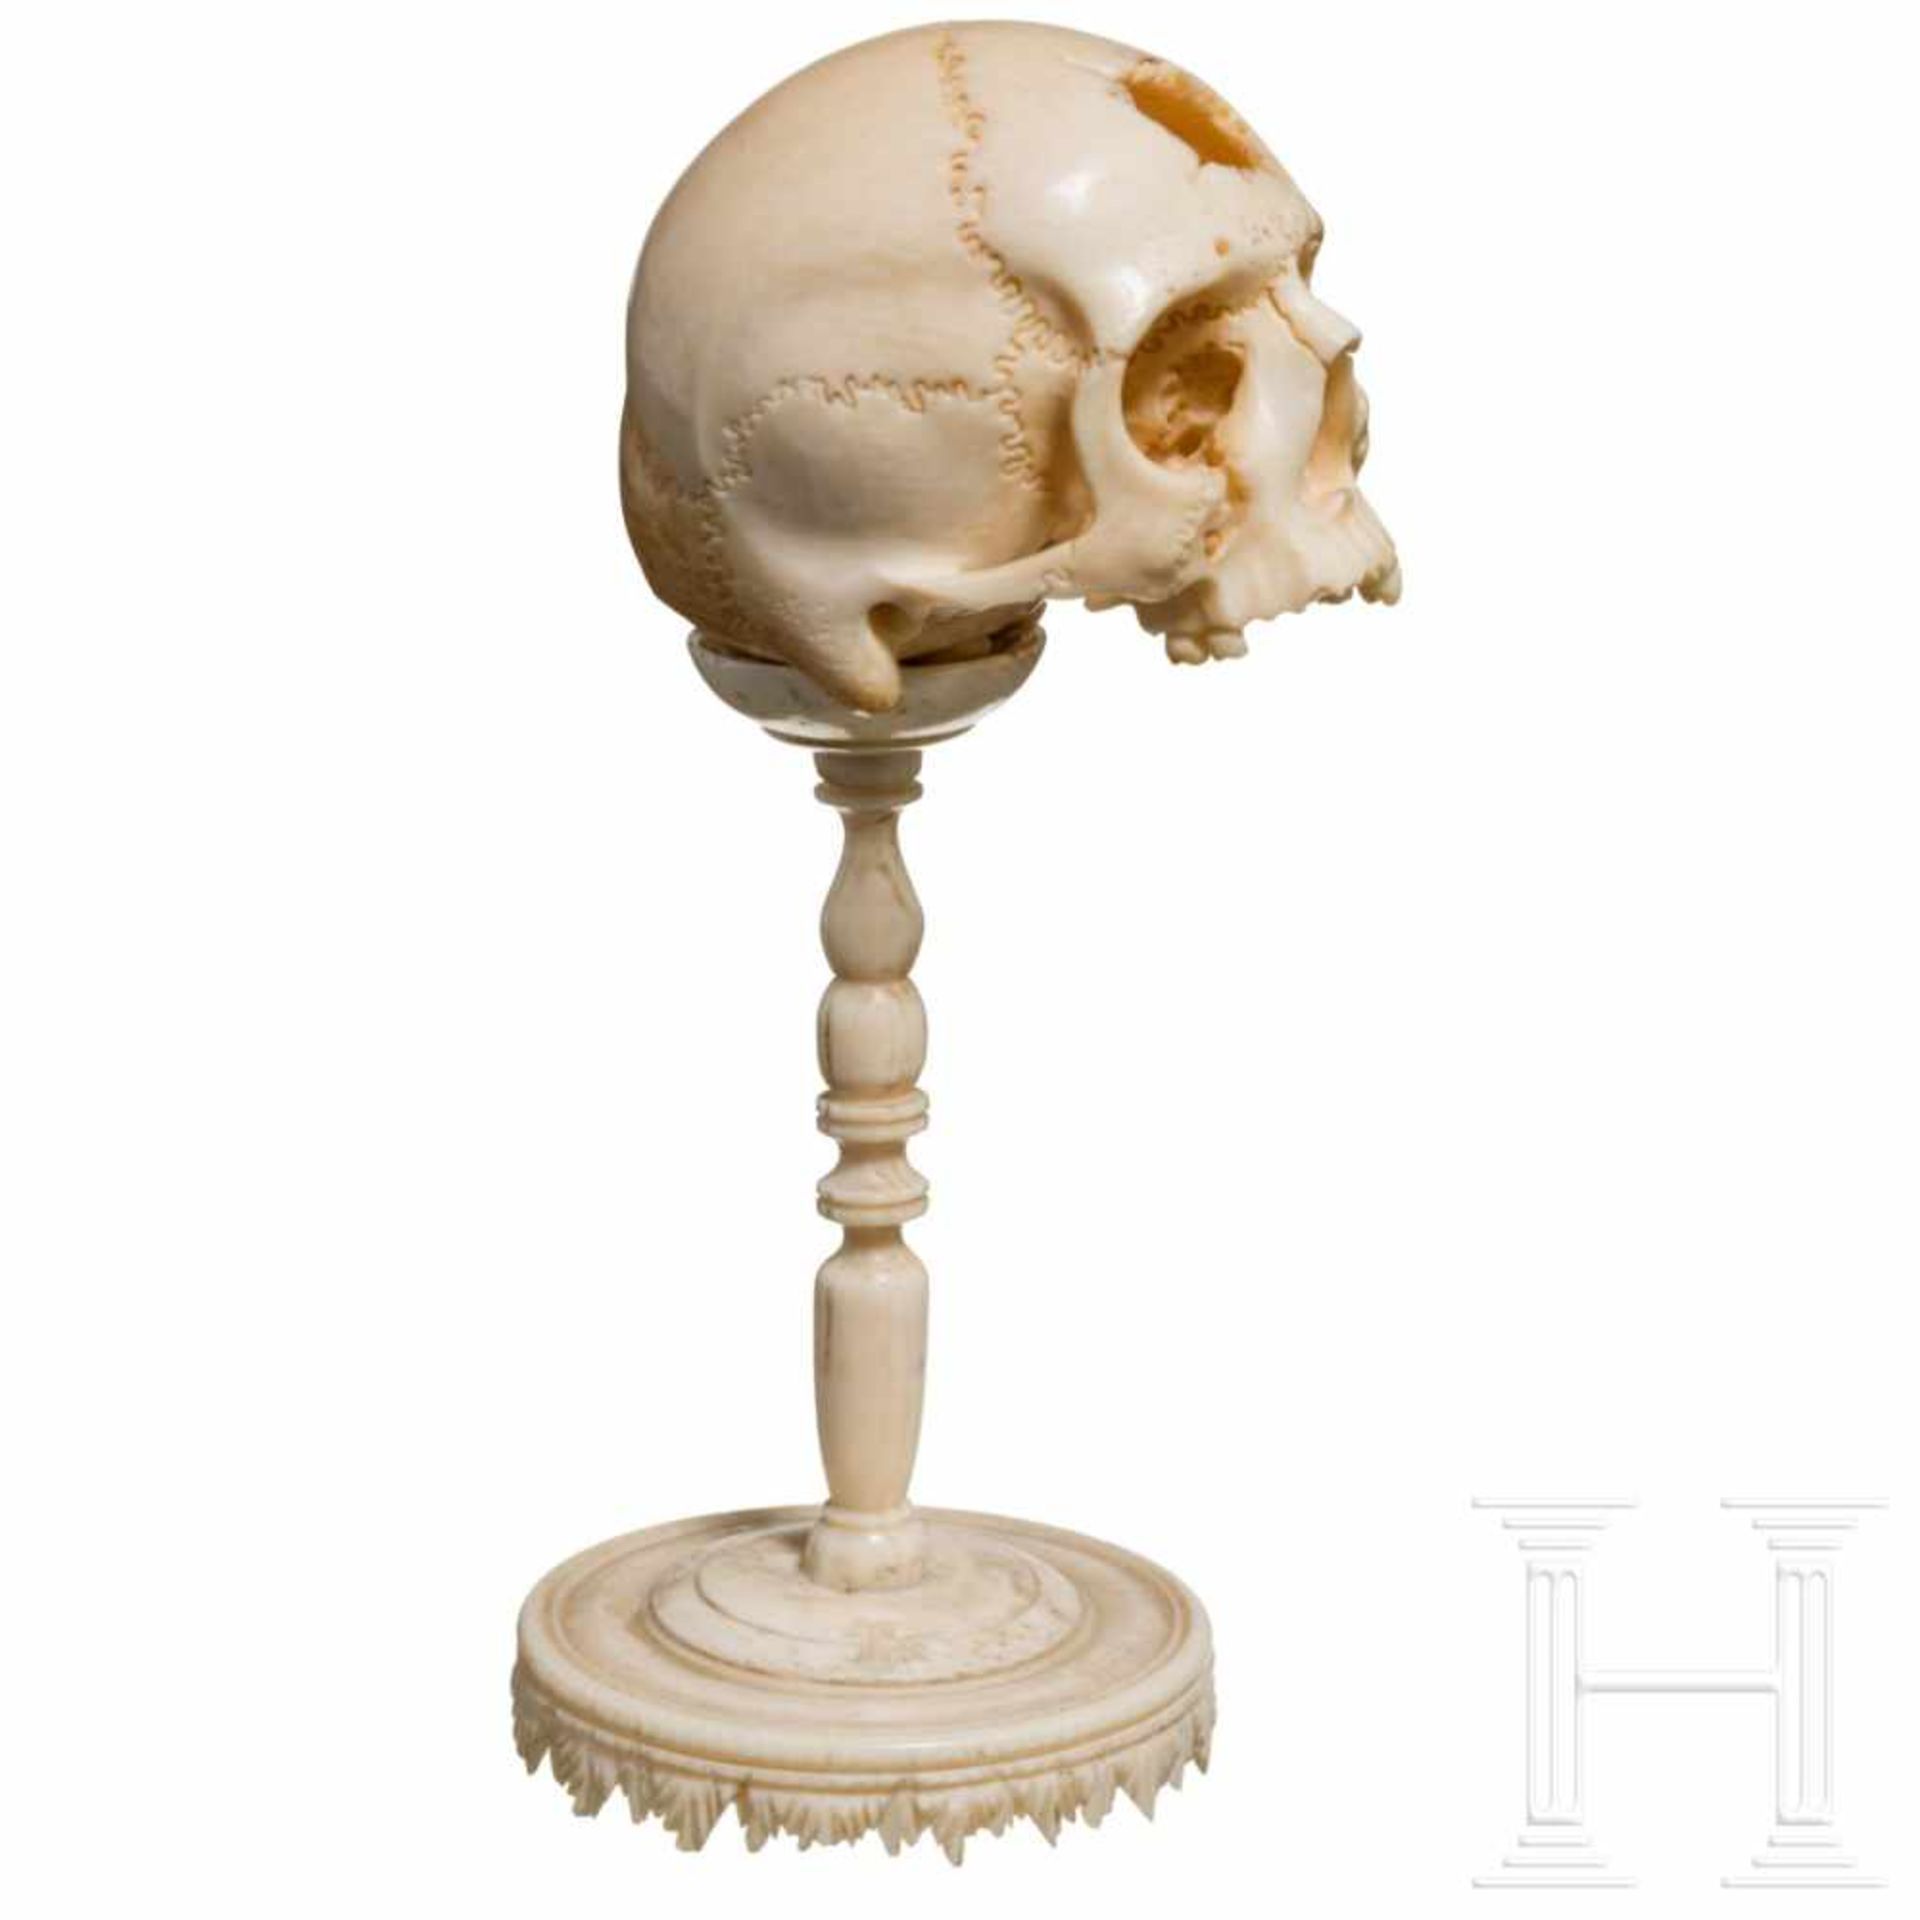 A German memento mori skull, 17th centuryFein geschnitzter, anatomisch korrekter menschlicher - Bild 3 aus 4